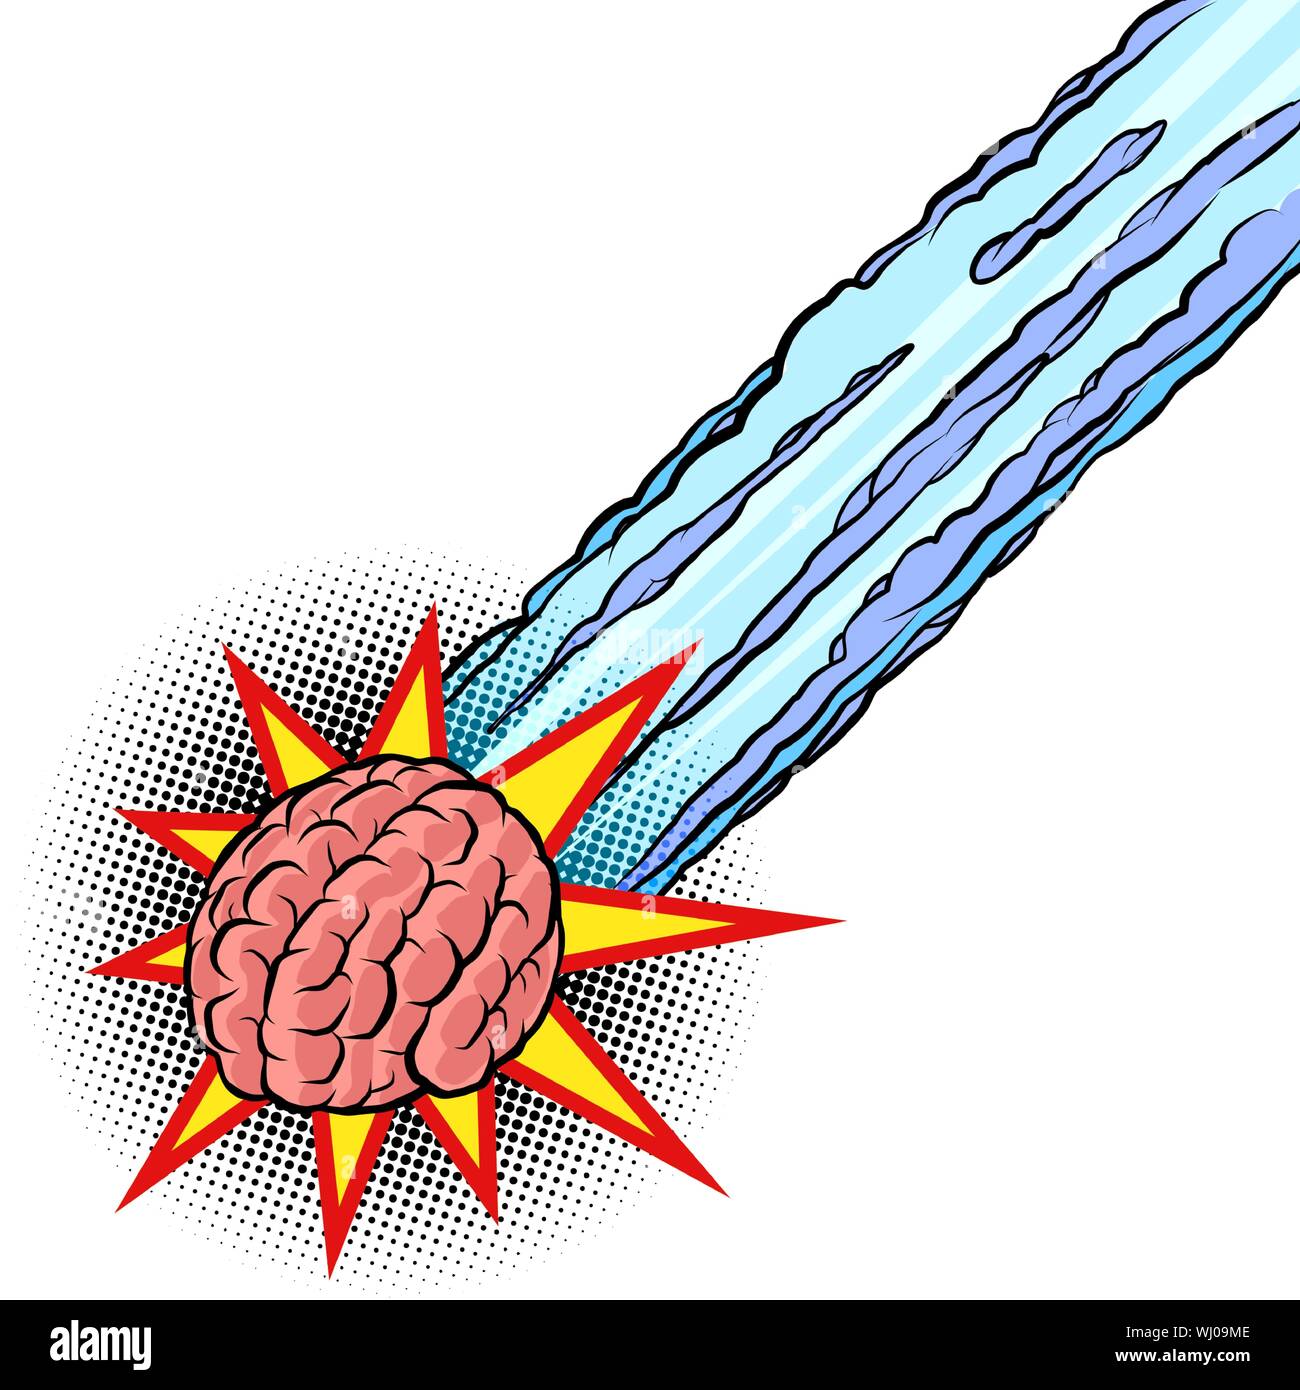 Gehirn Meteor. die Intelligenz des menschlichen Geistes. Comic cartoon Pop Art retro Vektor Zeichnung Abbildung Stock Vektor